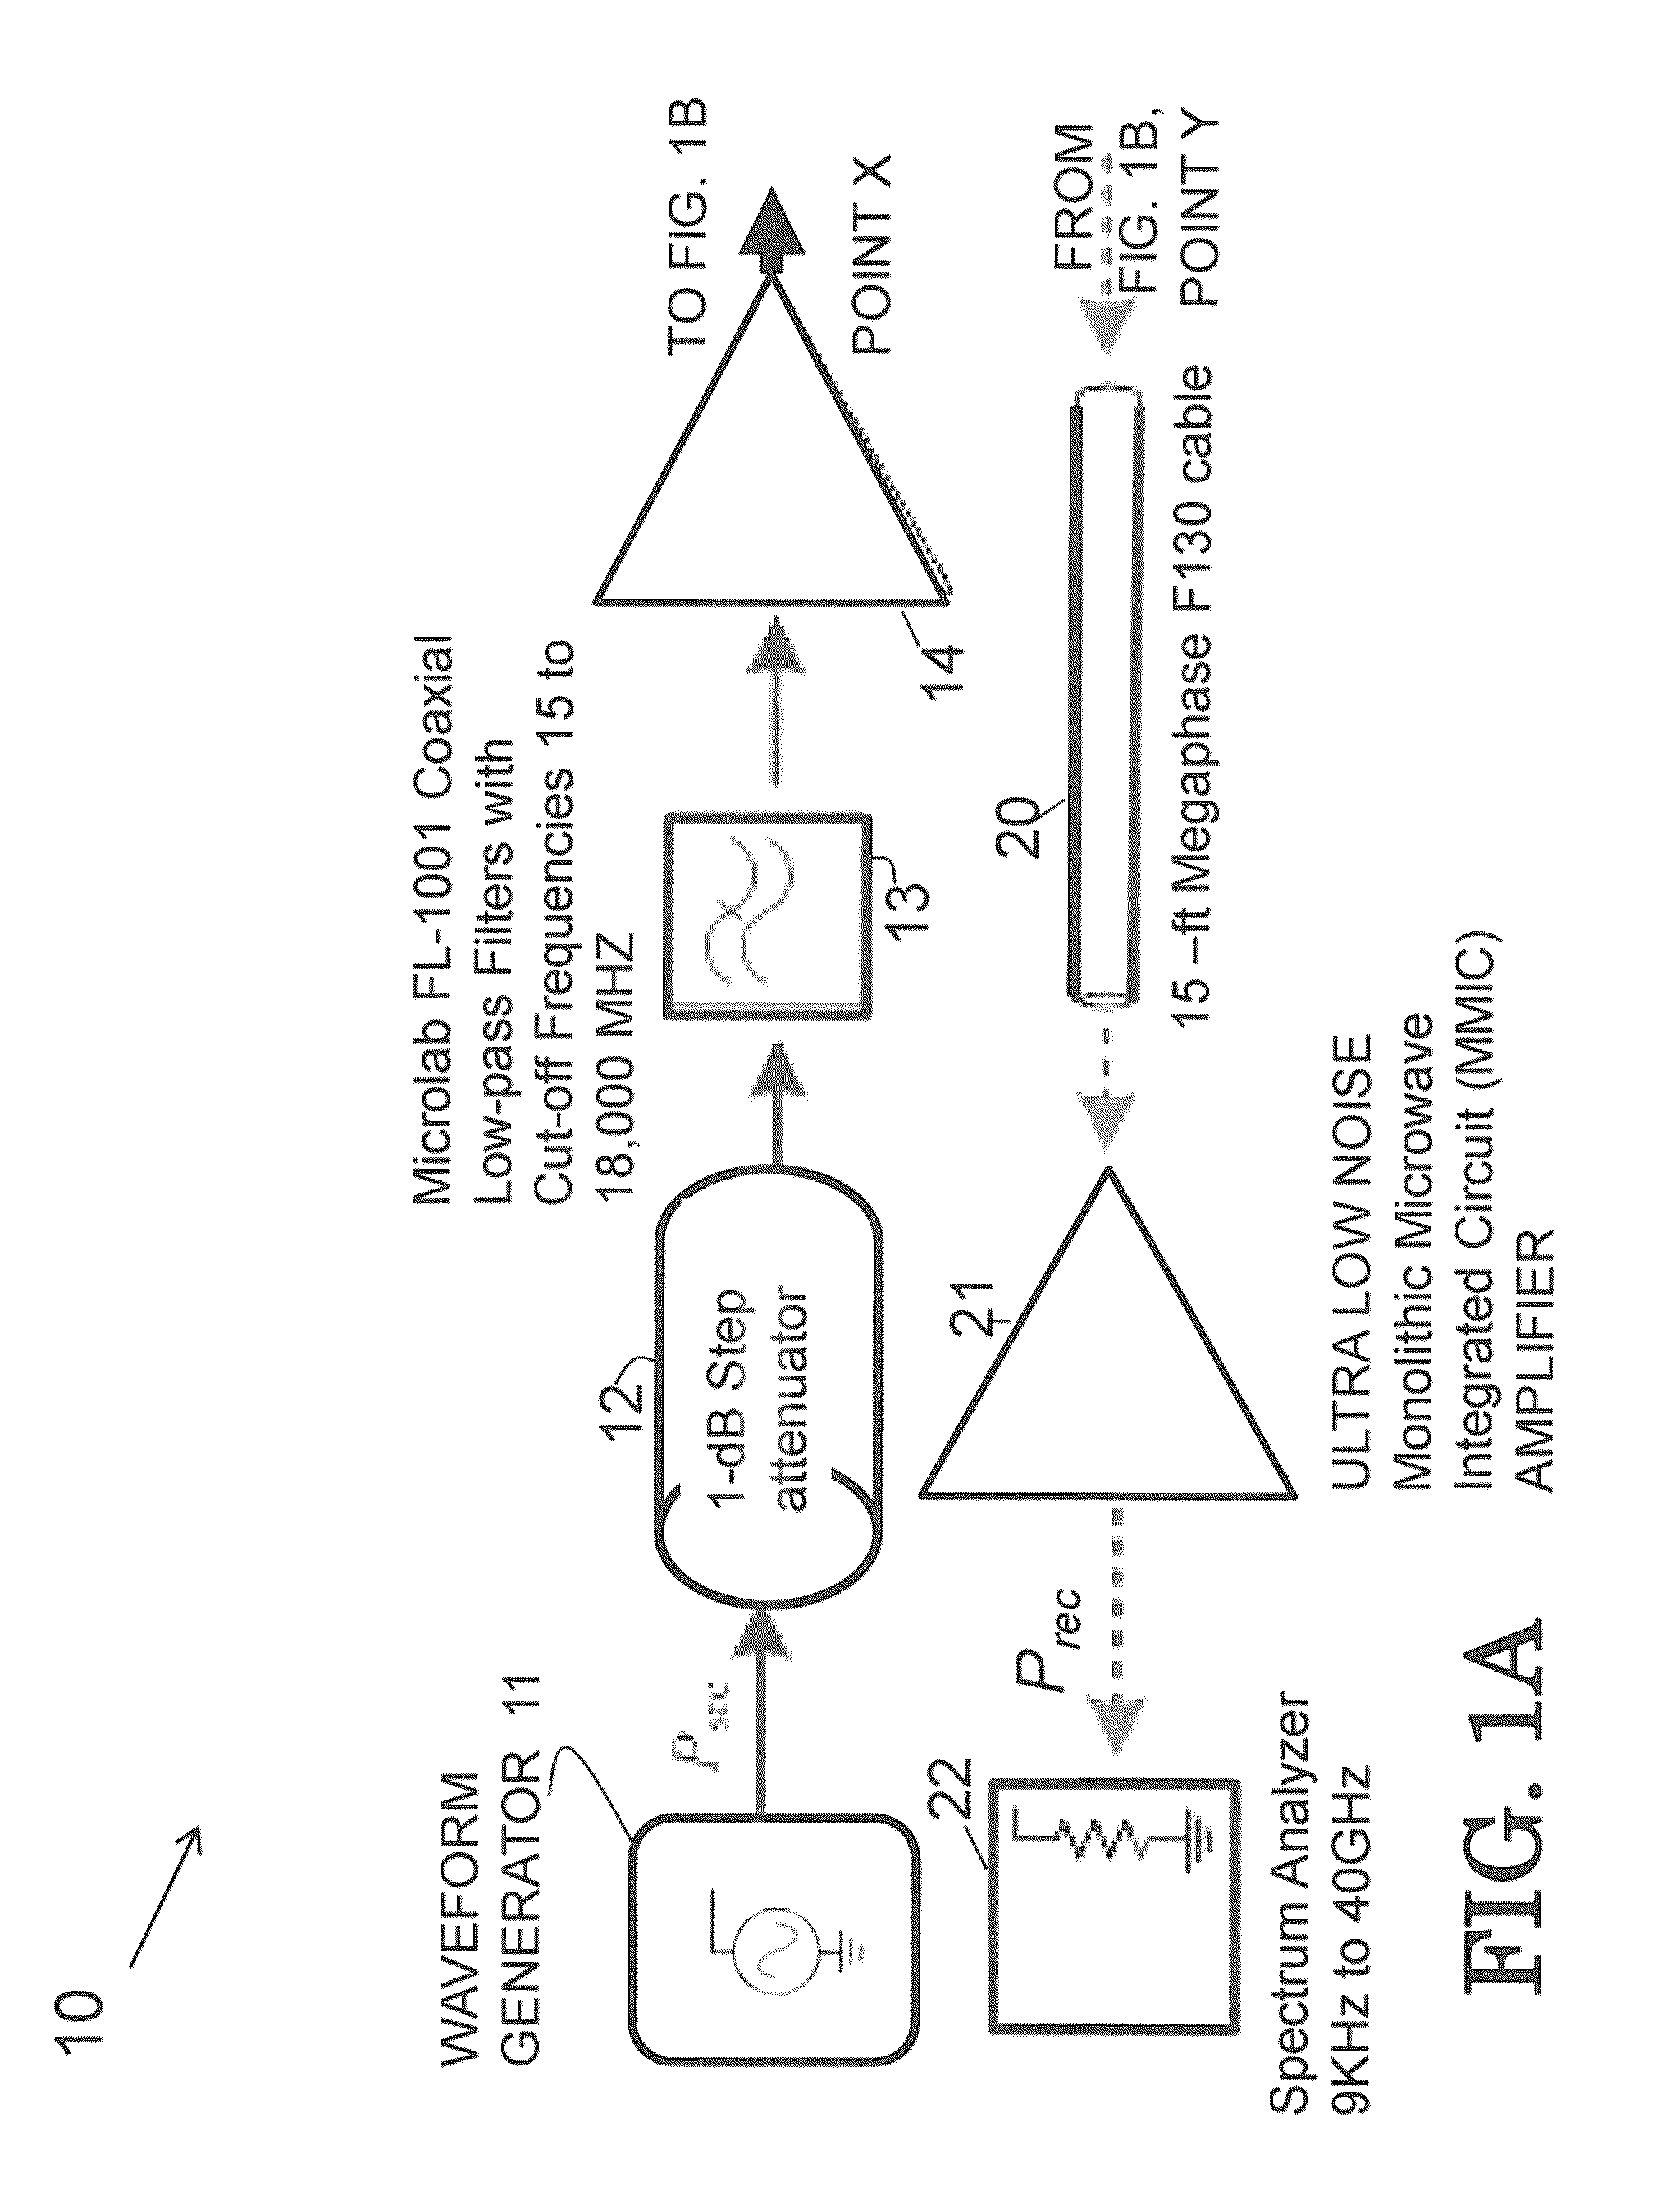 Multitone harmonic radar and method of use